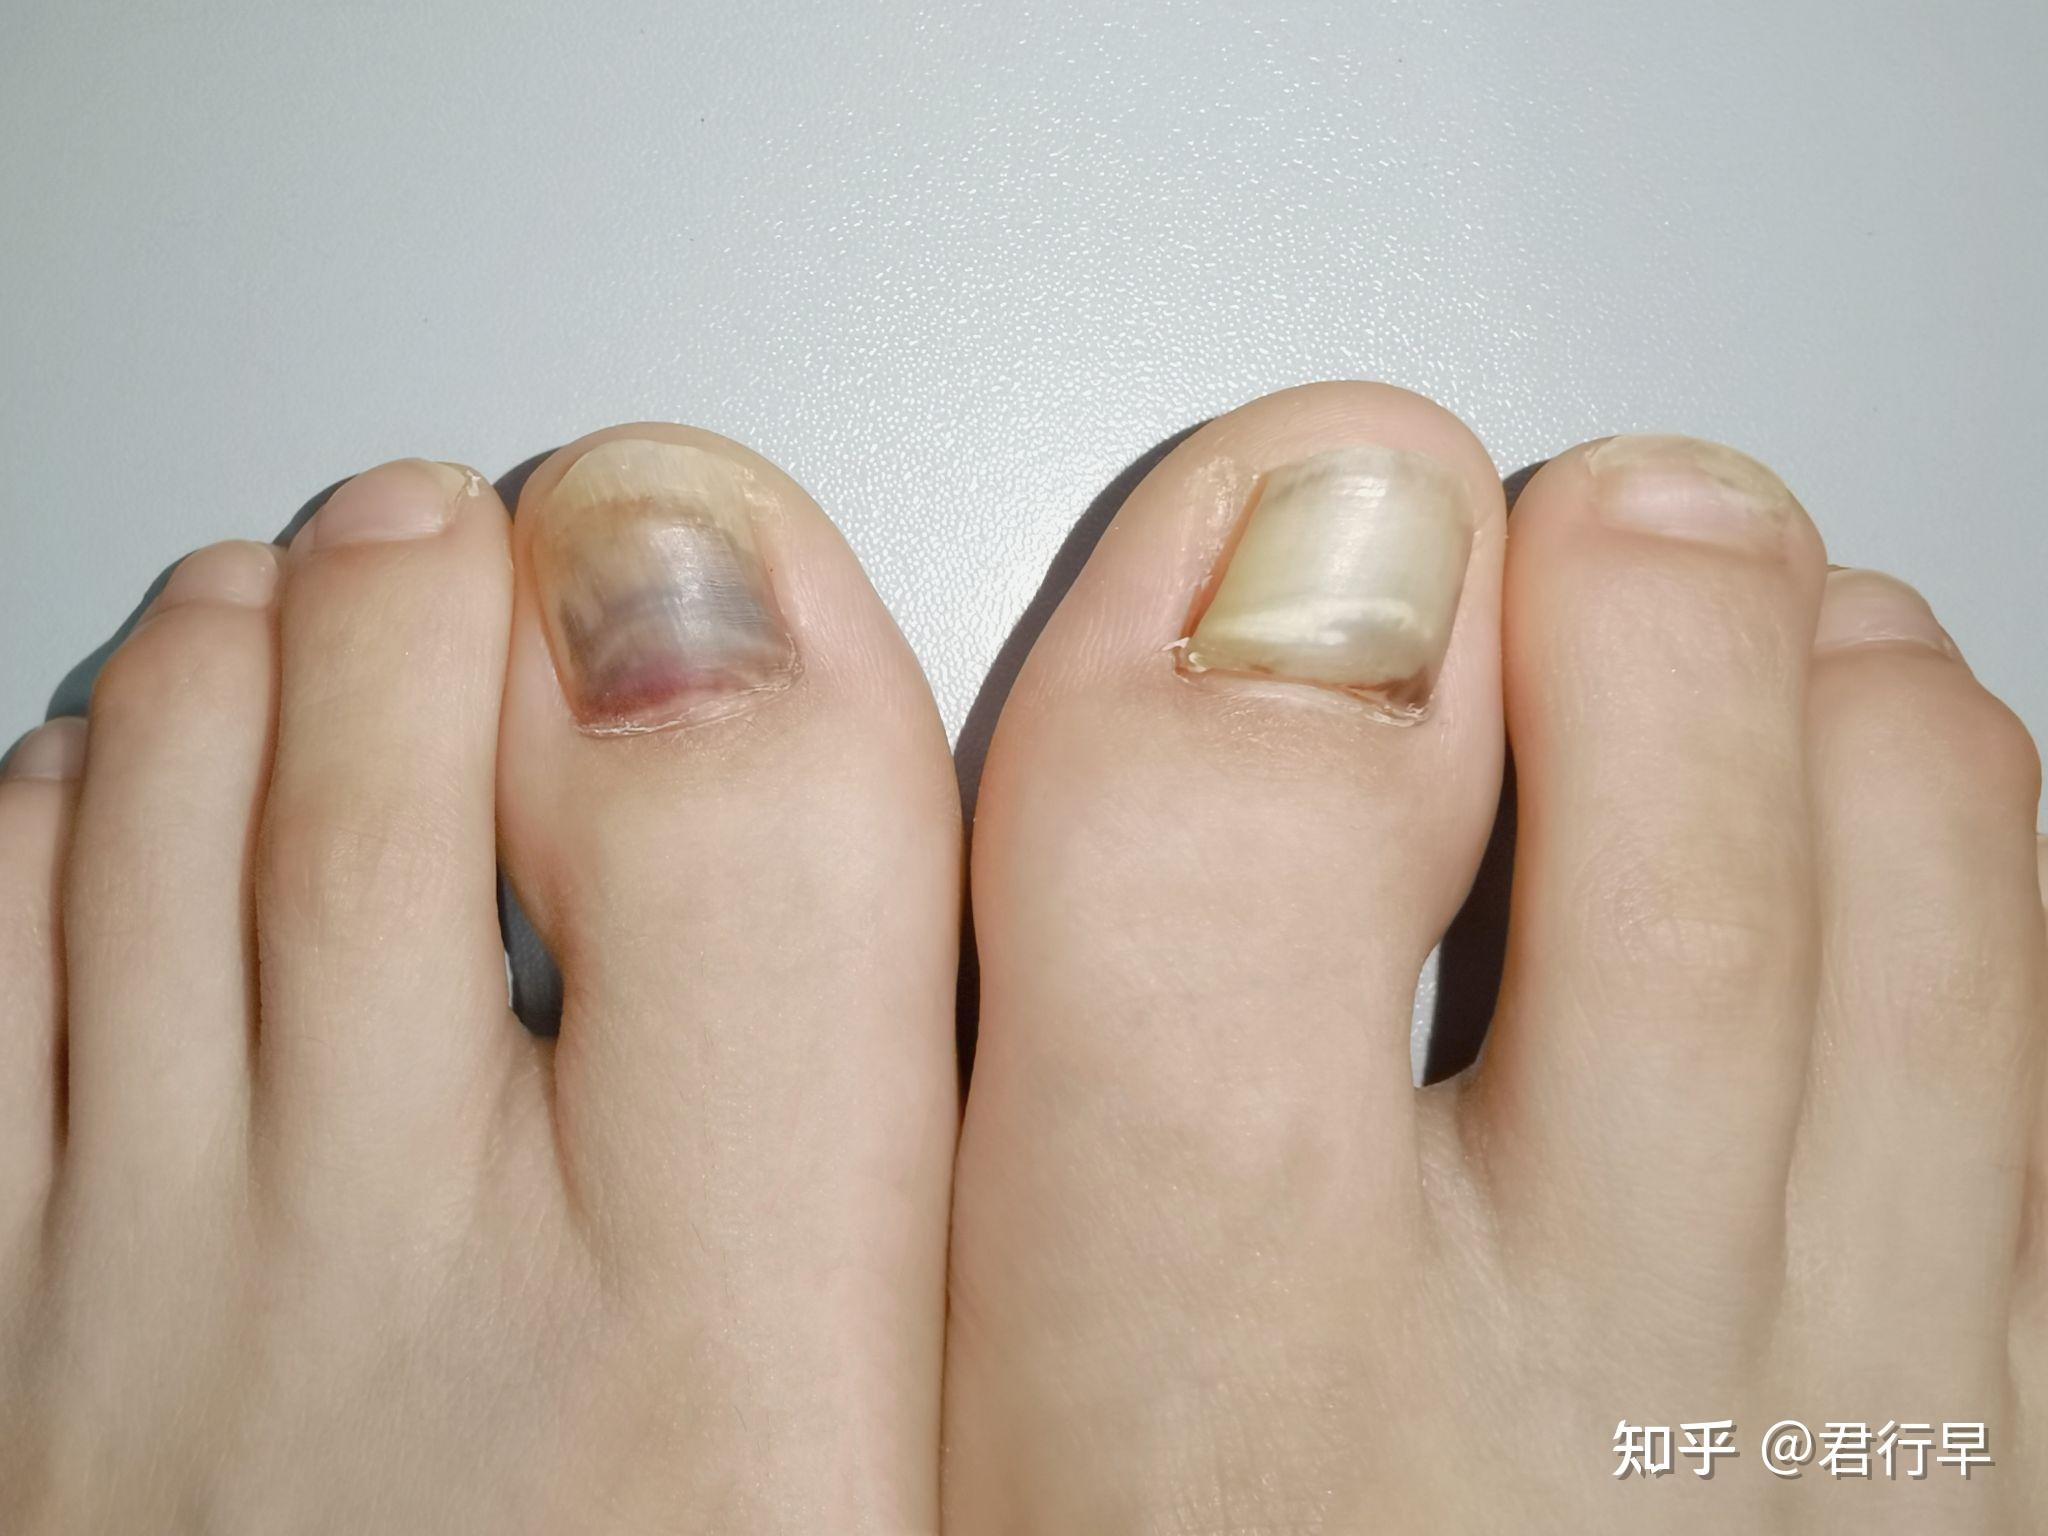 脚趾头恶性肿瘤的图片,脚趾癌 - 伤感说说吧